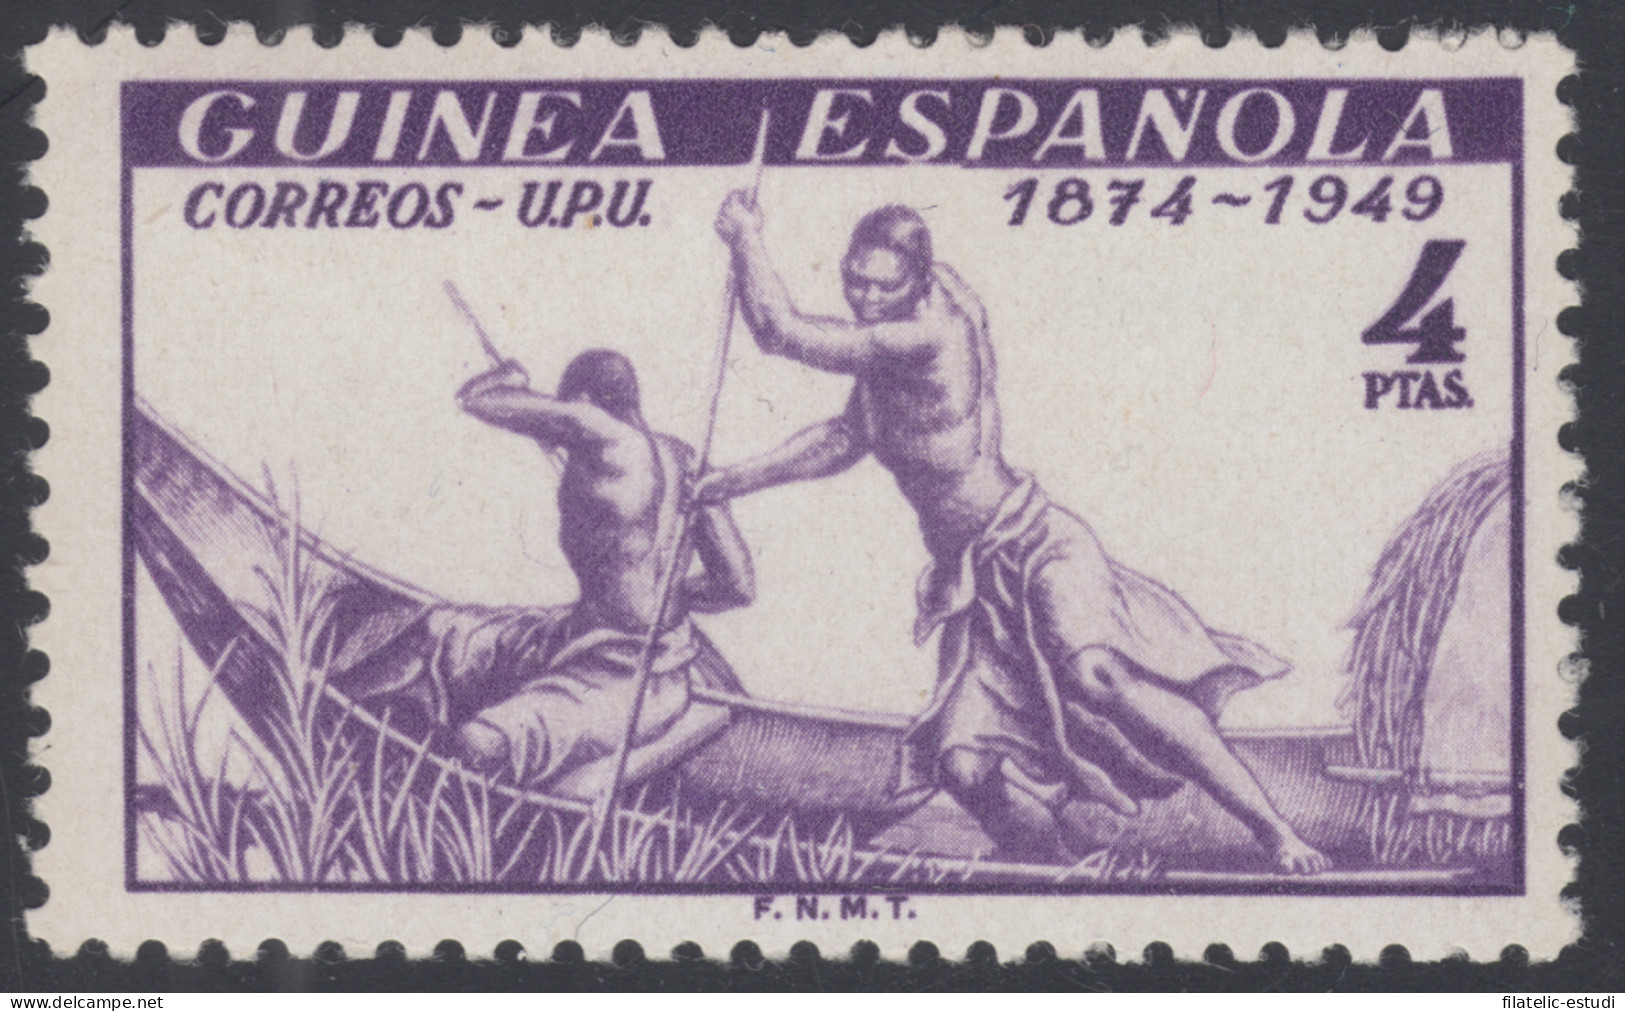 Guinea Española 275 1949 UPU MNH - Guinea Española